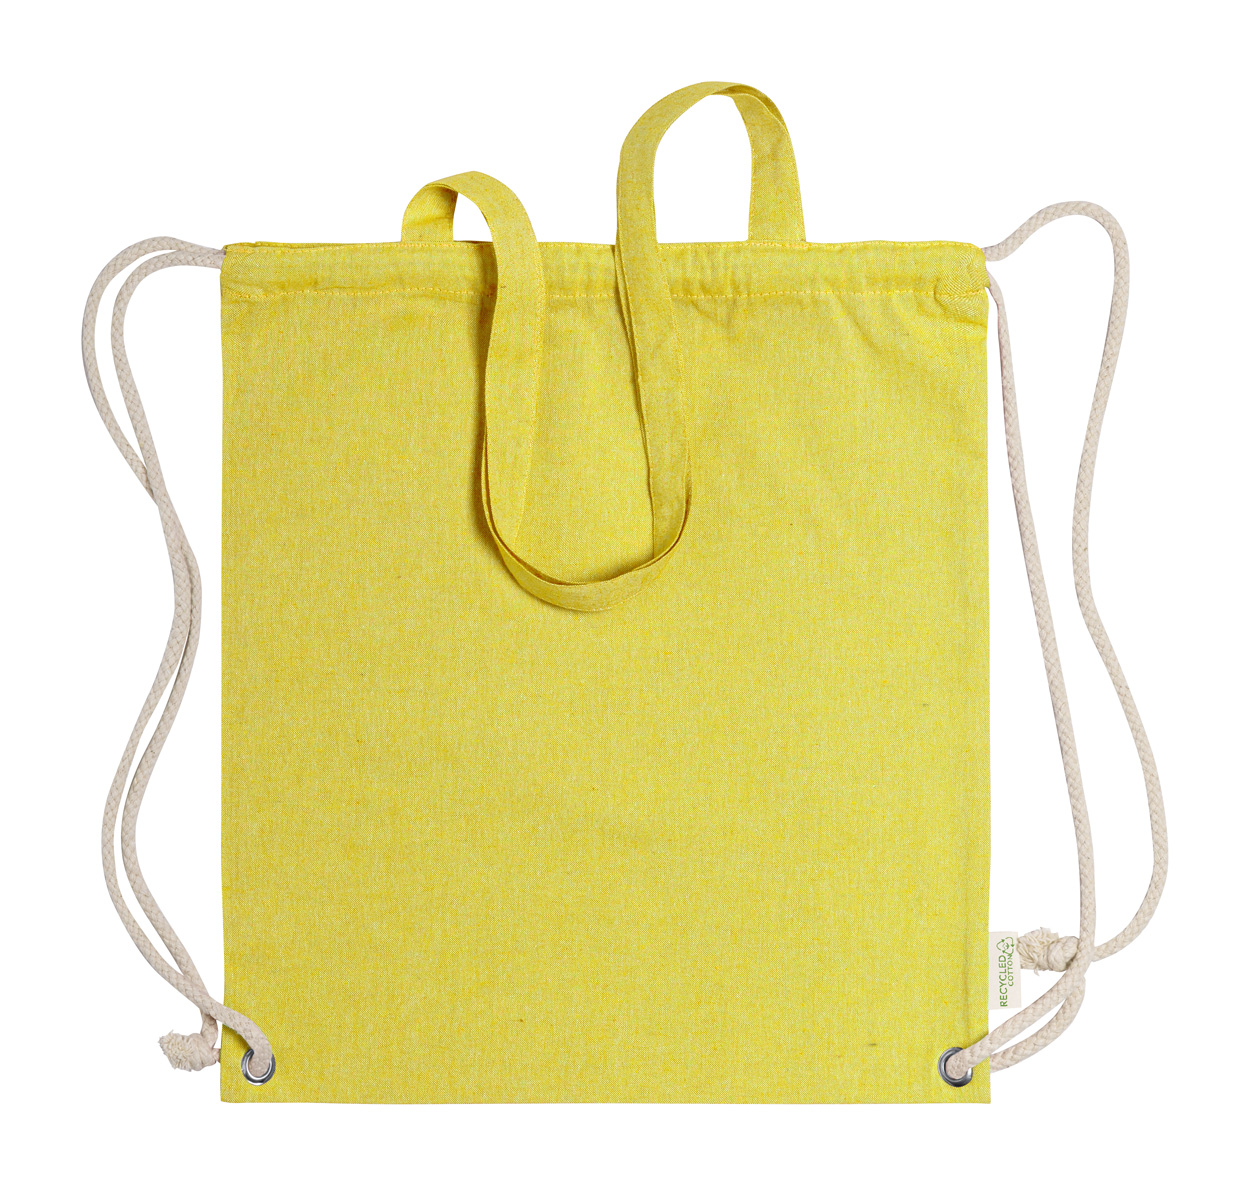 Fenin drawstring bag - yellow